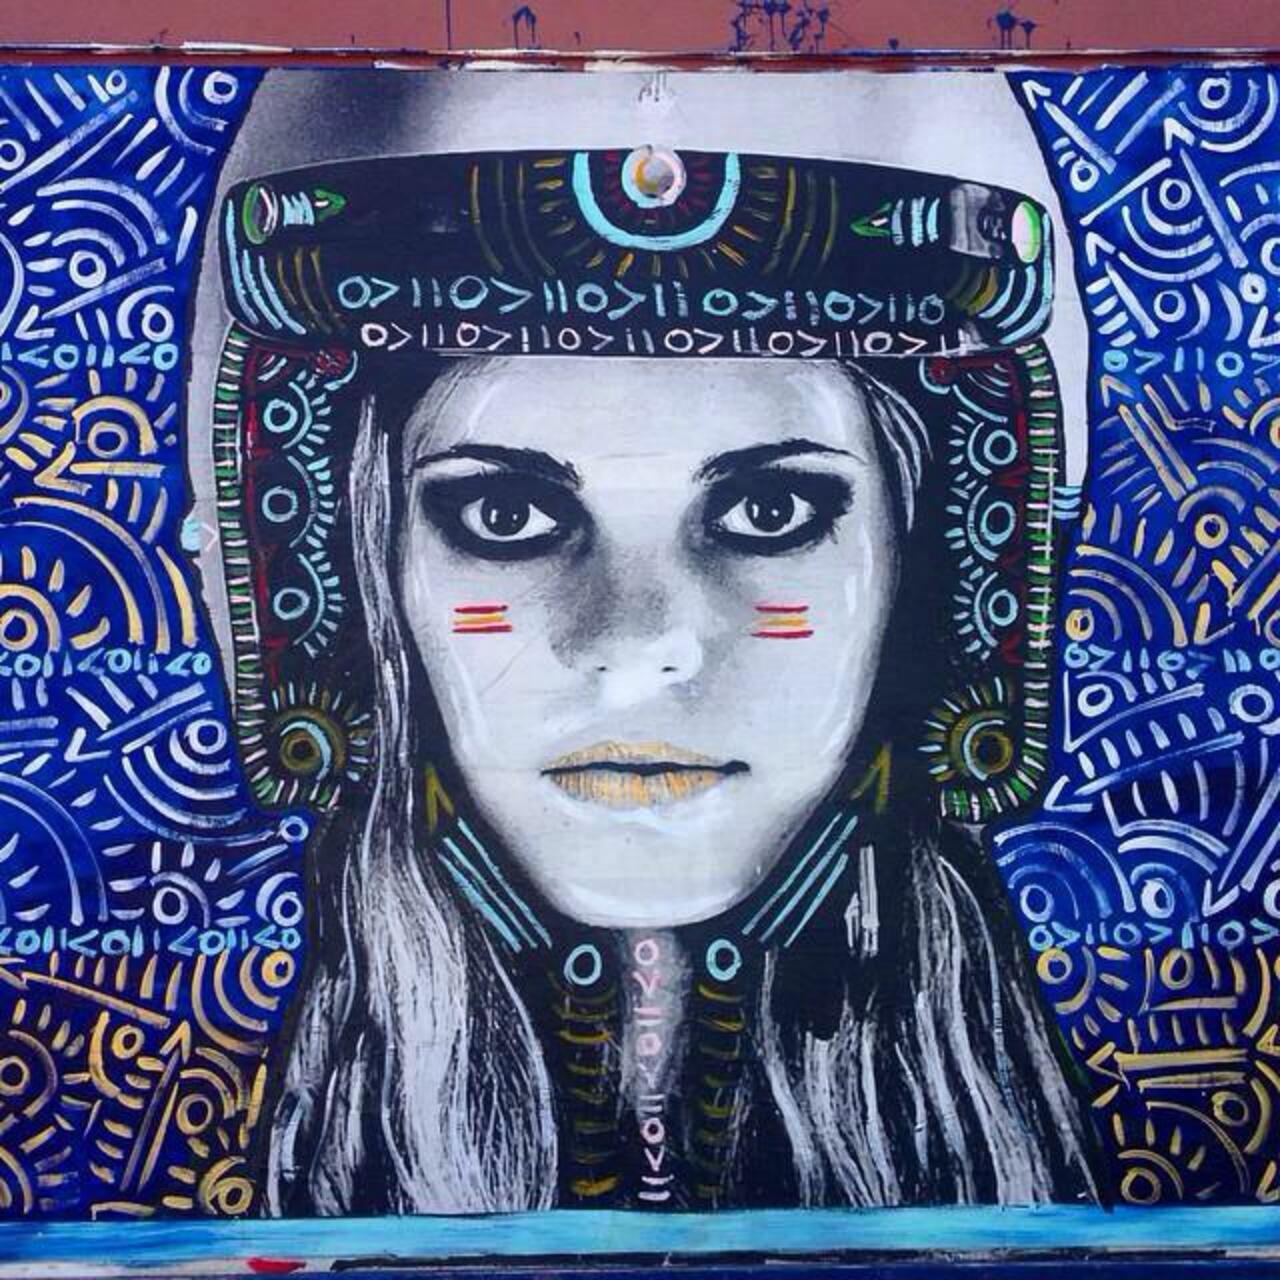 Street Art by Kelcey Fisher in LA
Photo by djcatnap

#art #arte #graffiti #streetart http://t.co/vfJLqAuvit